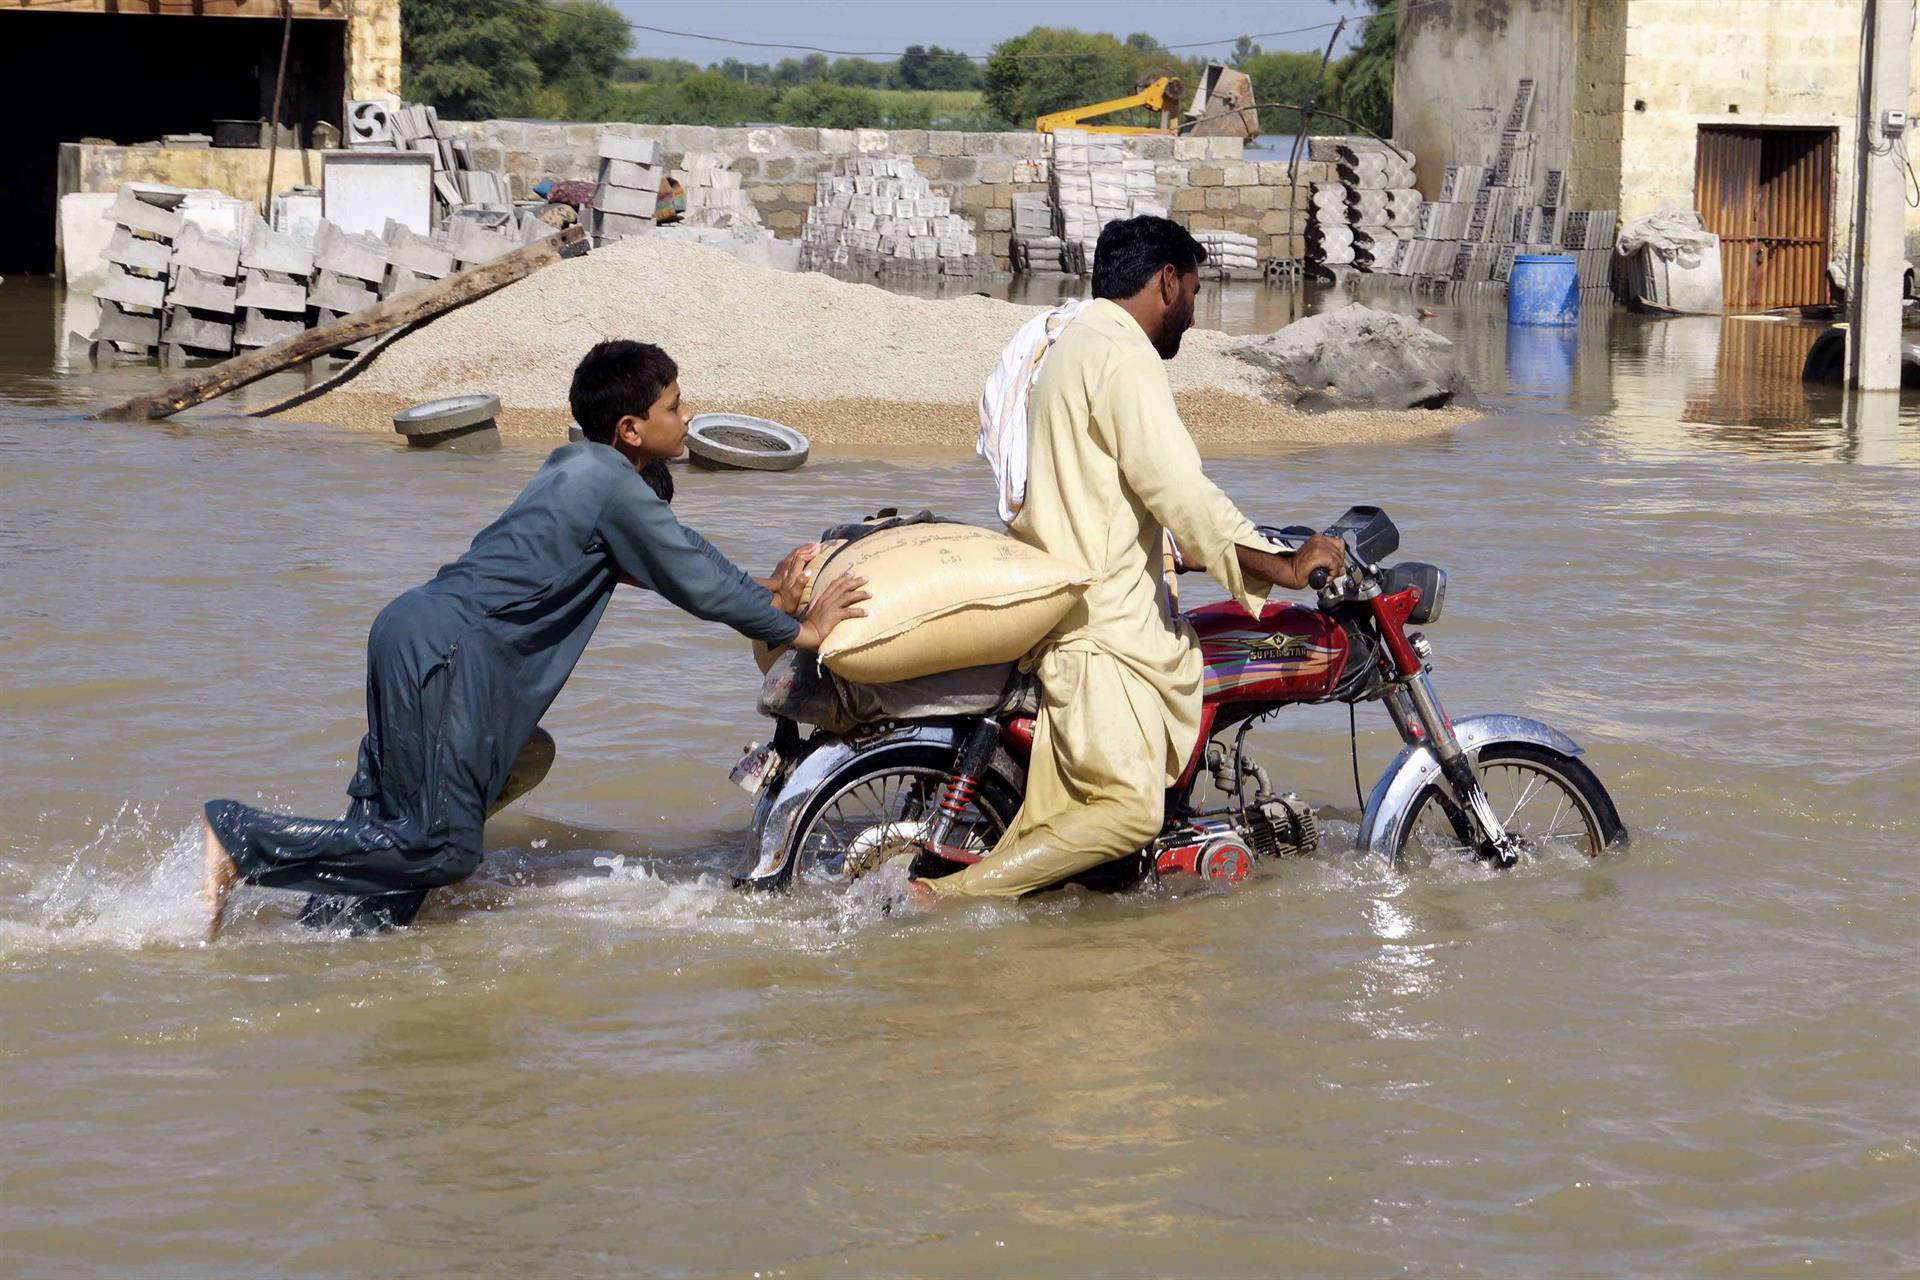 La OMS alerta de posible aumento de brotes infecciosos en la anegada Pakistán